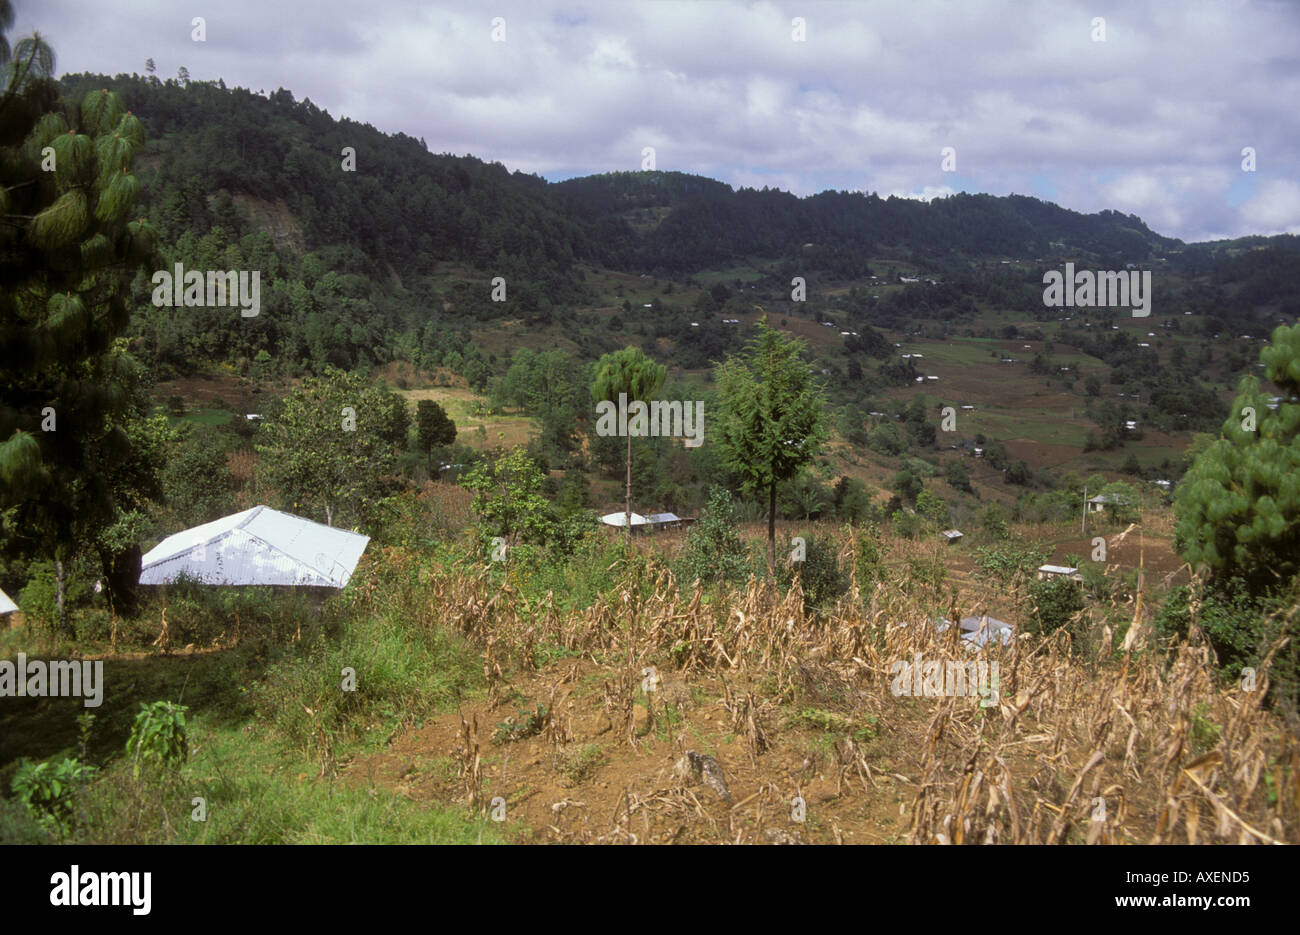 Small farms in mountains of Chiapas northeast of Chiapa de Corzo along highway 195 Mexico Stock Photo